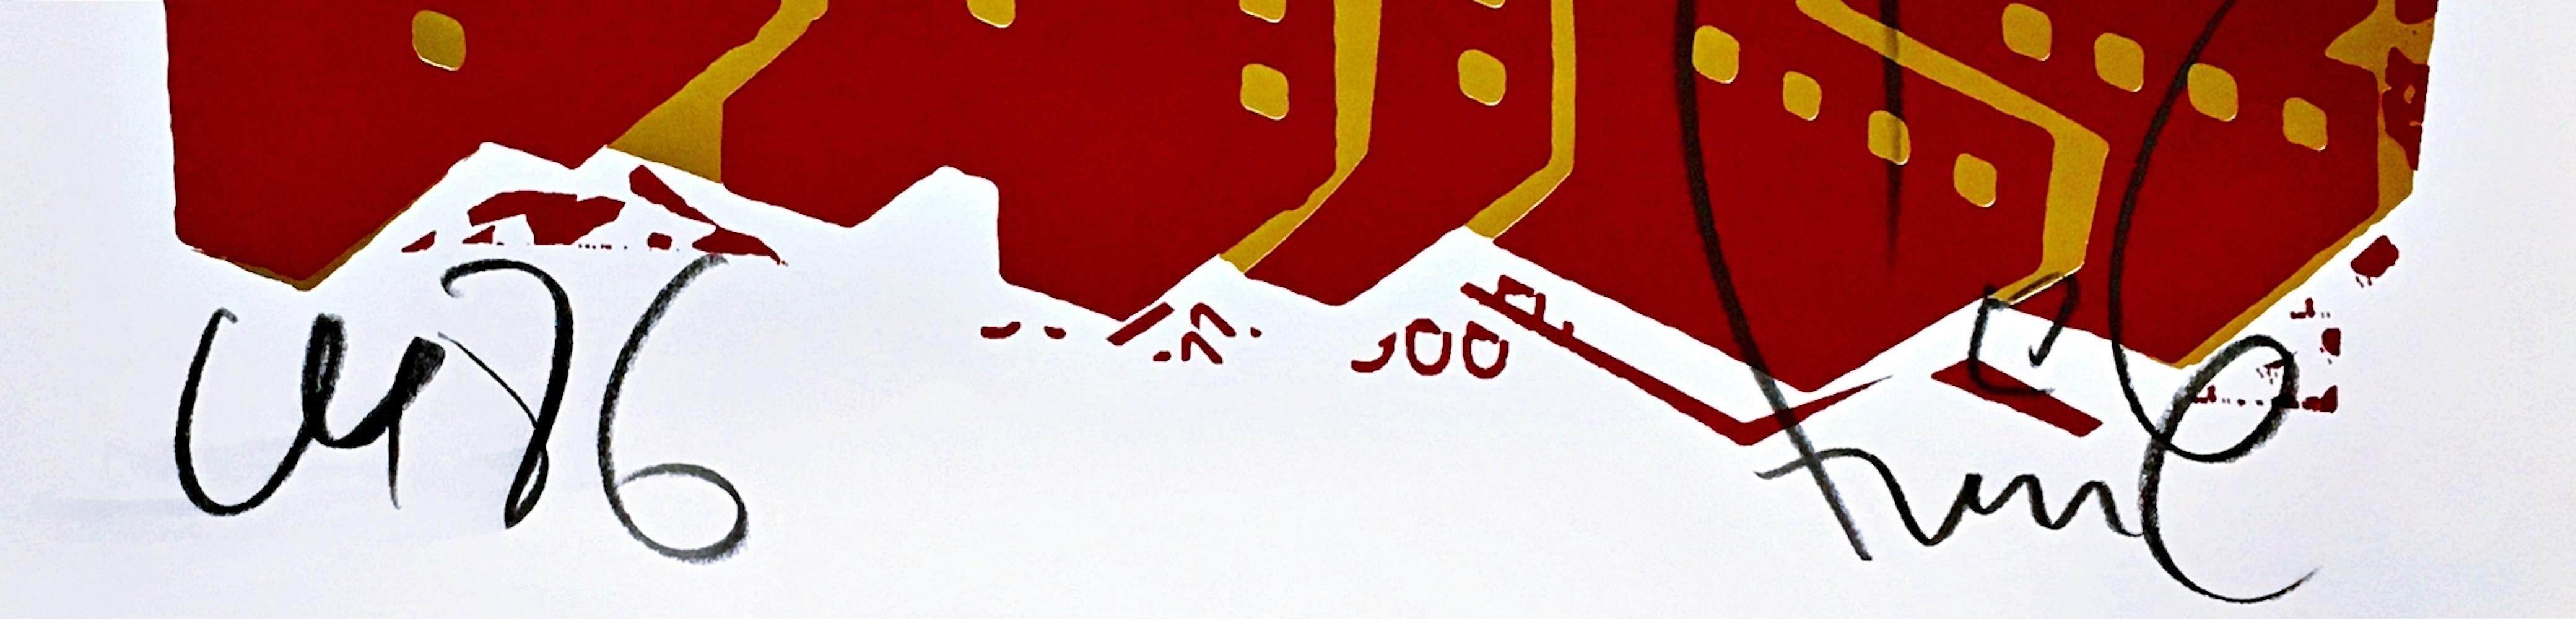 FAILE
Roter Hund, 2018
Offsetdruck mit Goldfolie auf Lenox 100 Papier. Faile Studio Stempel auf der Rückseite
Kommentiert und handsigniert mit Bleistift auf der unteren Vorderseite, mit Atelierstempel auf der Rückseite
28 × 22 Zoll
Ungerahmt
Faile's